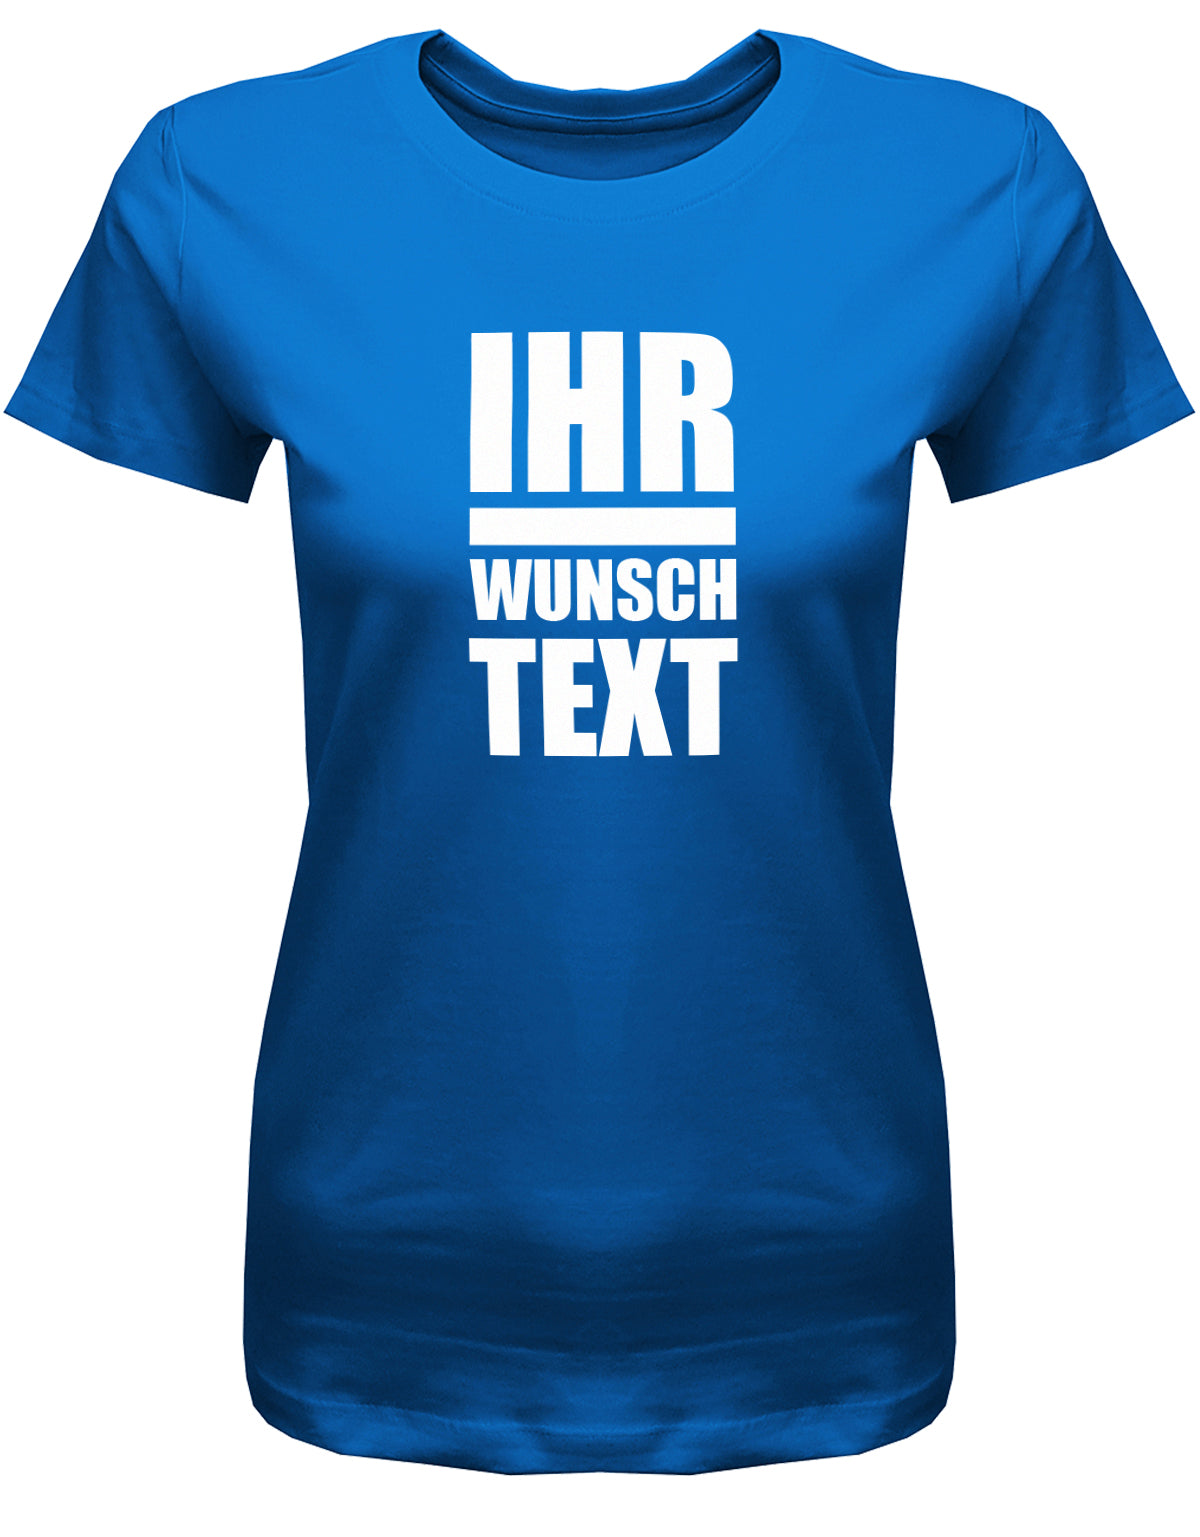 Frauen Tshirt mit Wunschtext.  Große Buchstaben mit Balken Block Style untereinander. Royalblau